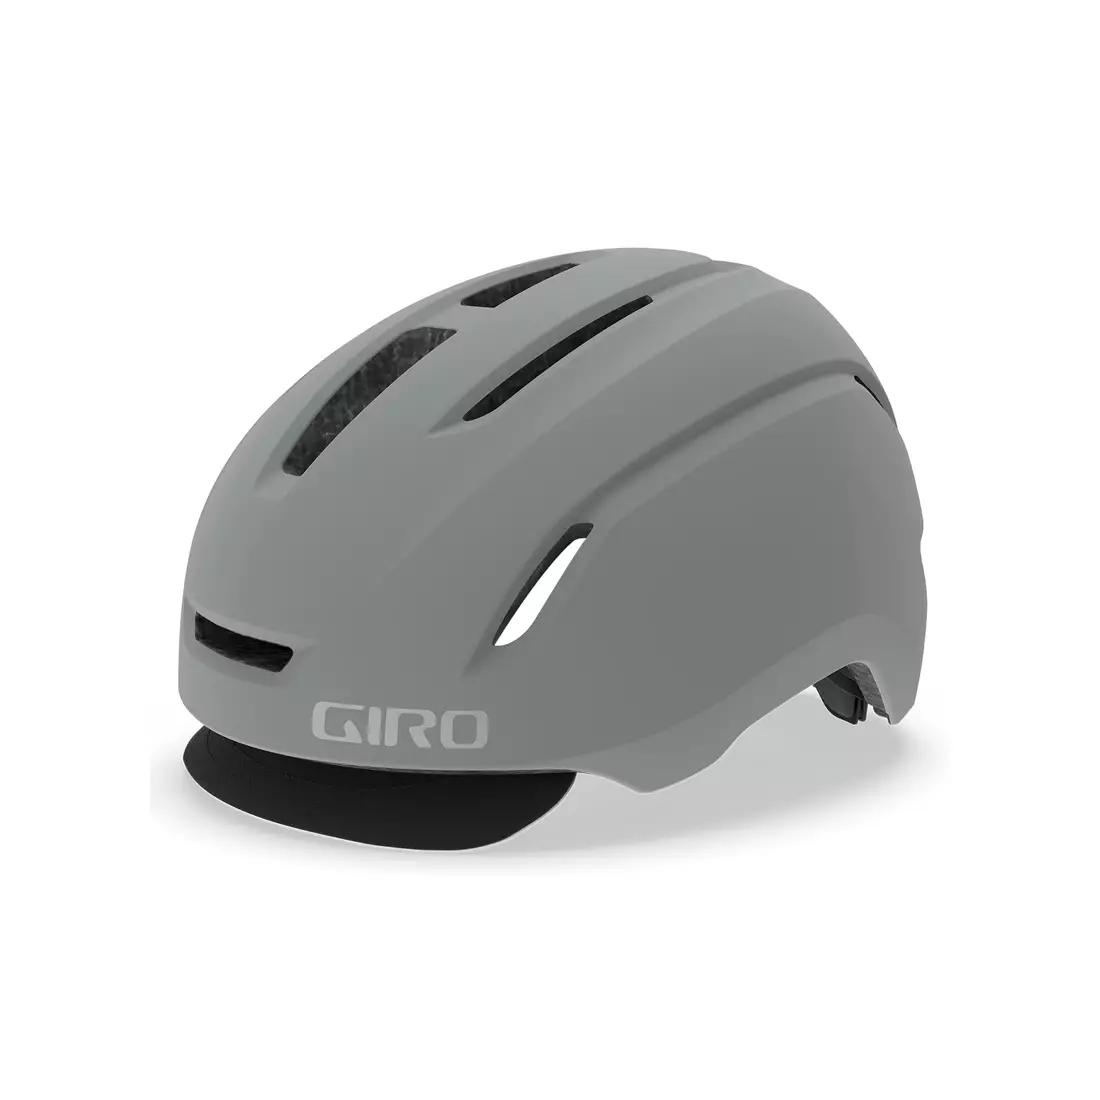 GIRO kask rowerowy miejski CADEN matte grey GR-7100390